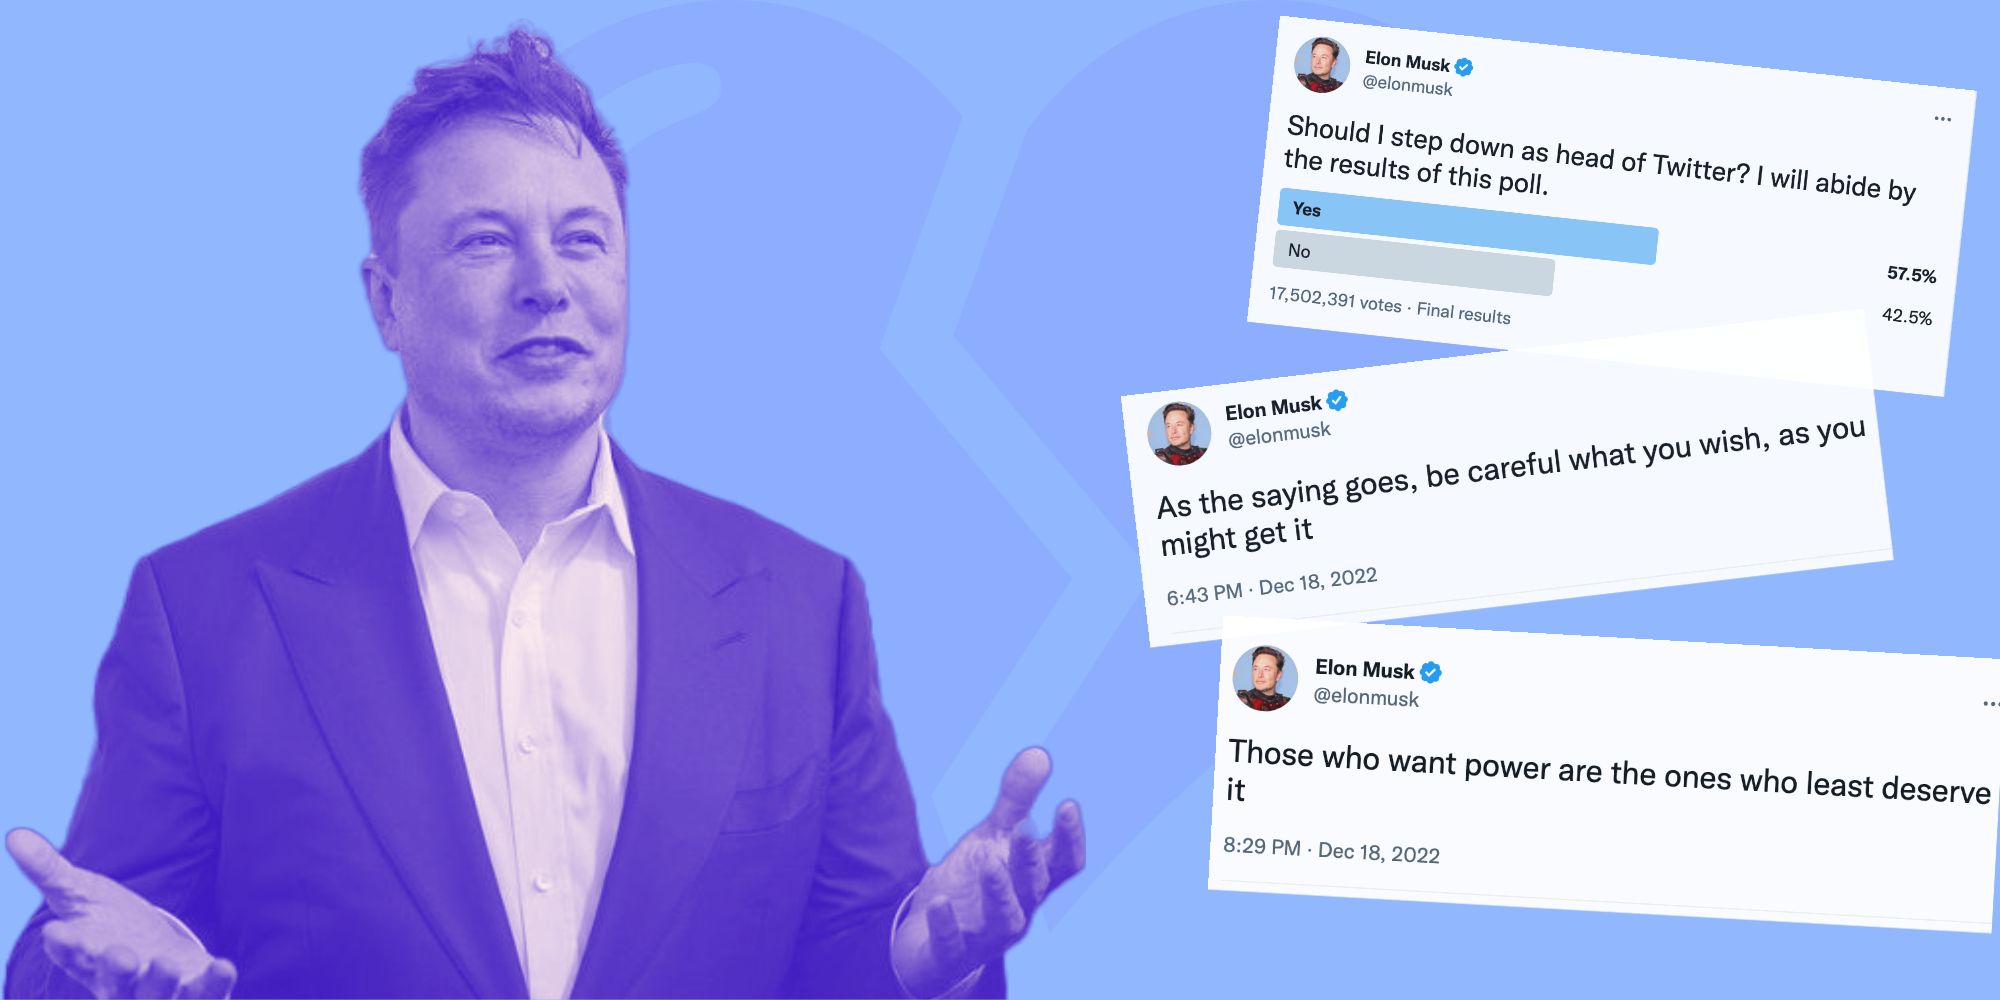 Une photo d'Elon Musk avec ses mains devant lui tournées vers le haut, l'air confus, avec une teinte bleue, à côté de trois captures d'écran de tweets.  Un émoji au cœur brisé s'affiche faiblement sur le fond bleu